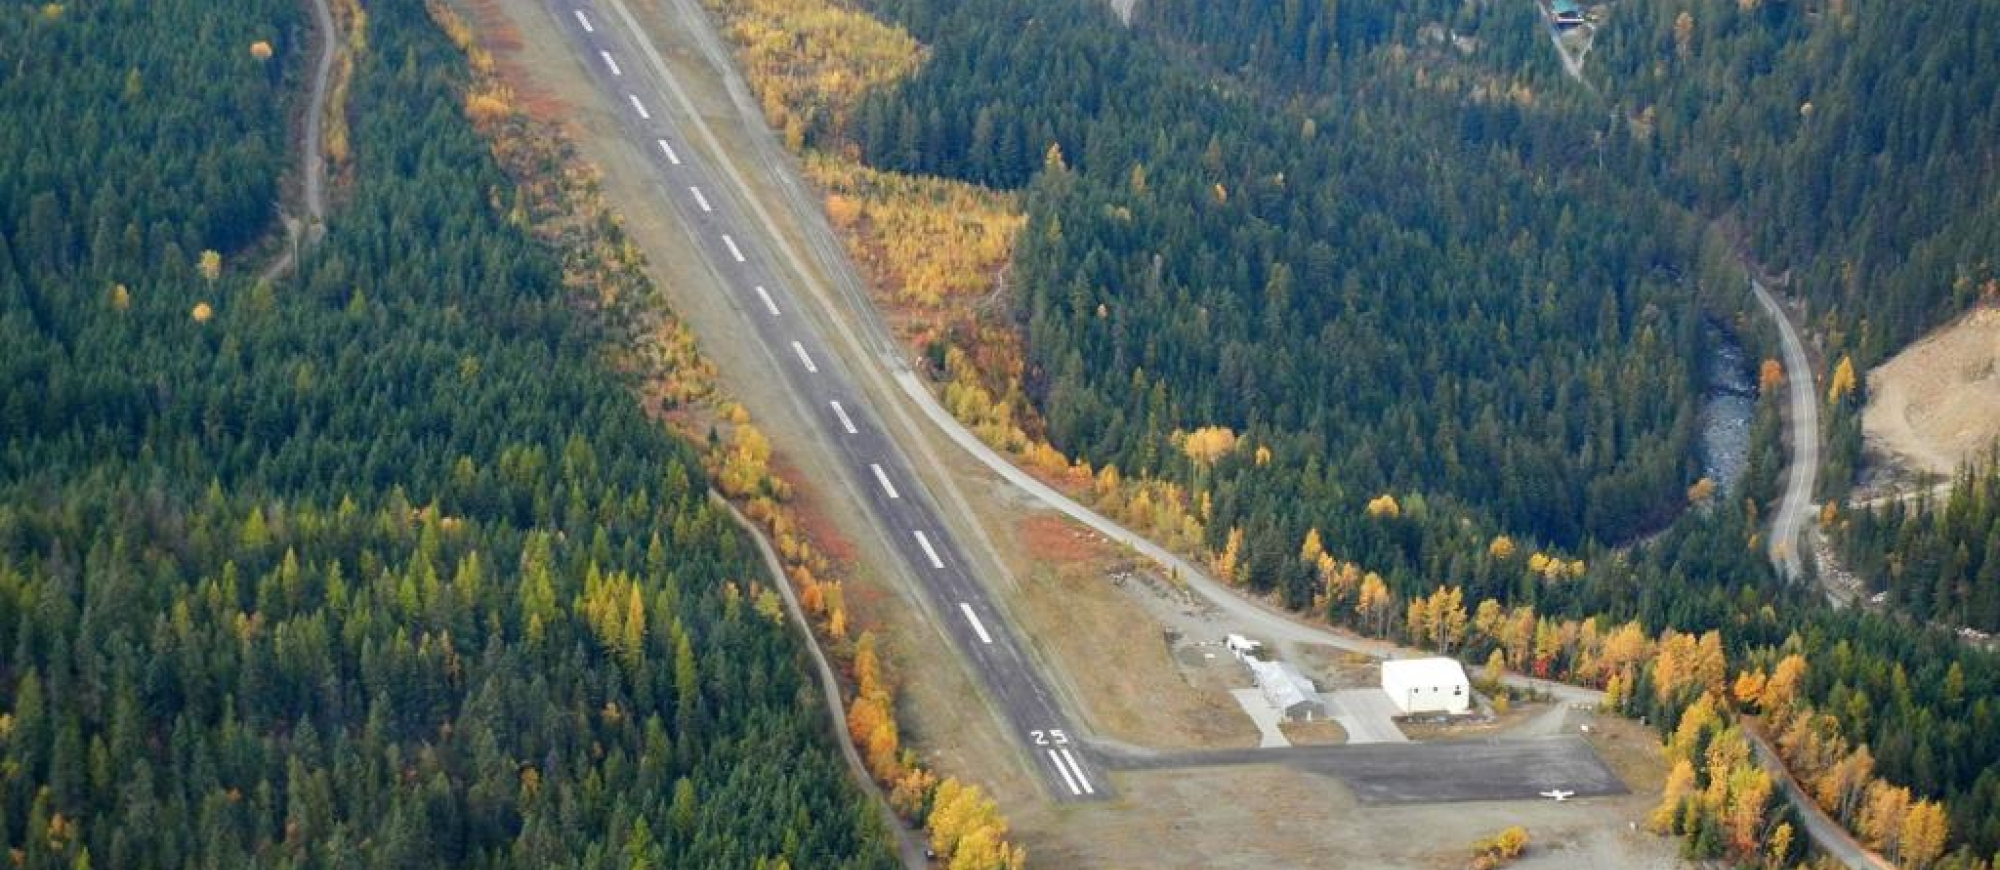 Kaslo Airport runway looking west.